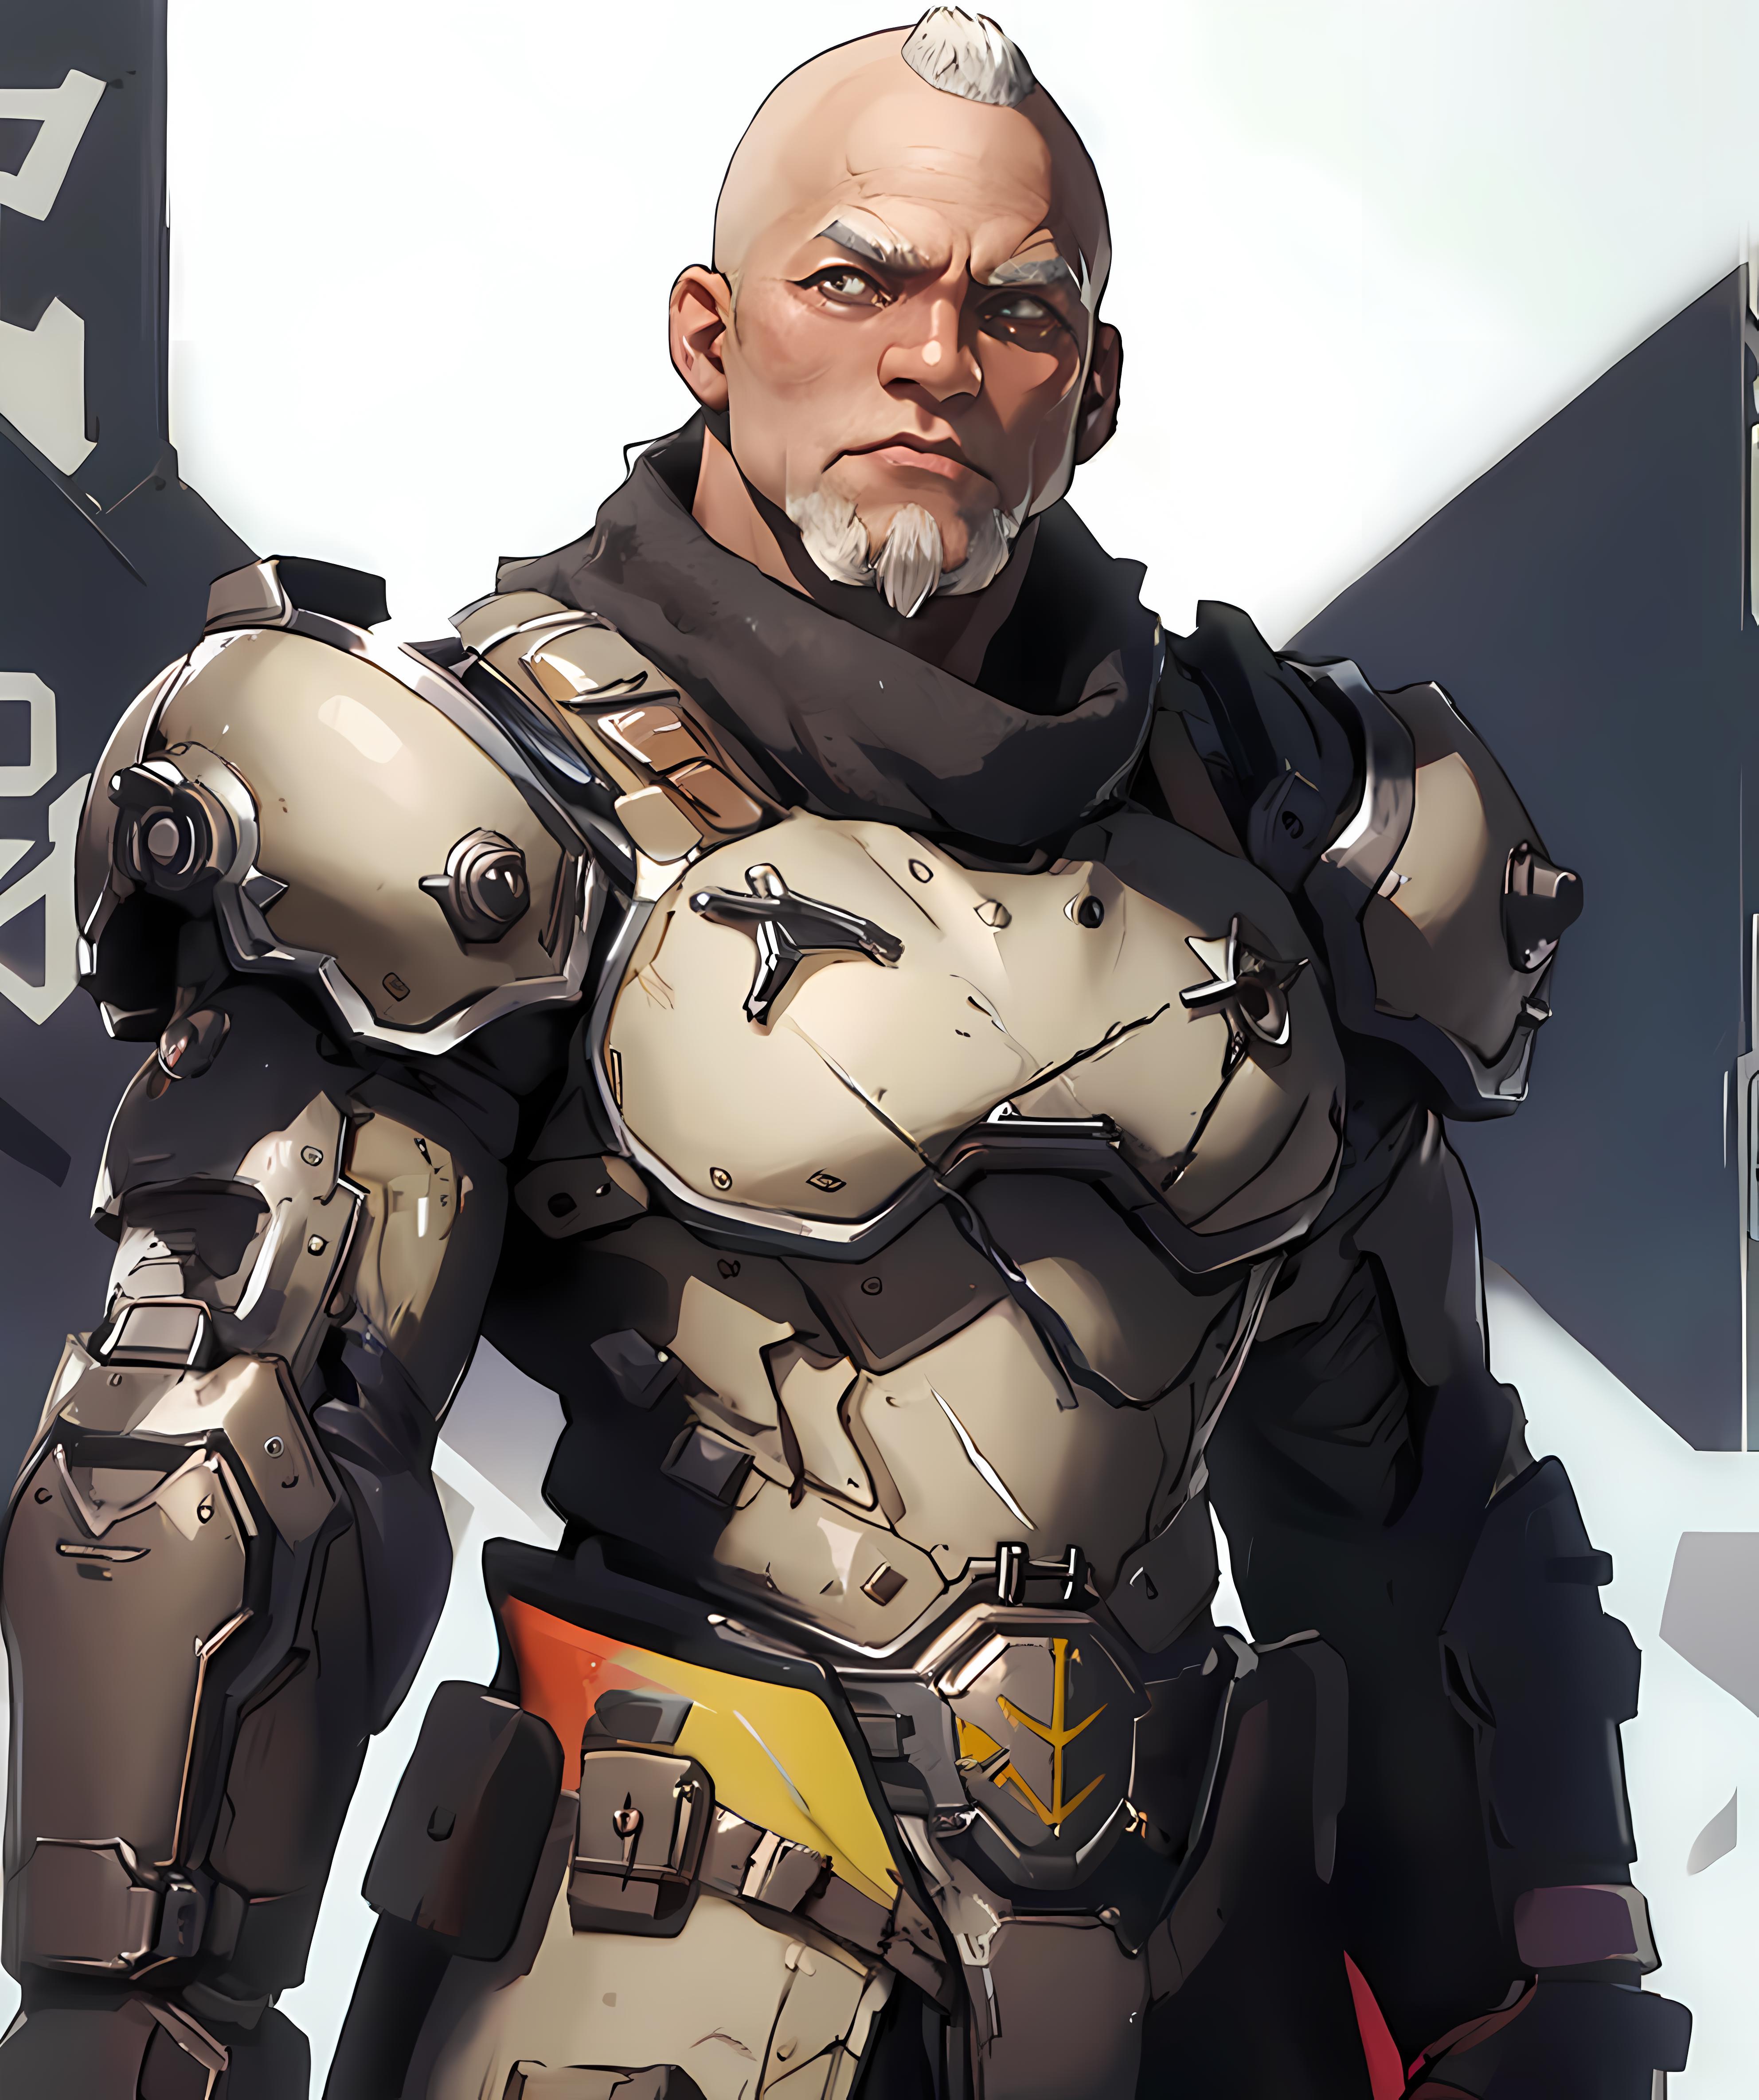 Commander Valen (The Betrayer) | DOOM image by doomguy11111